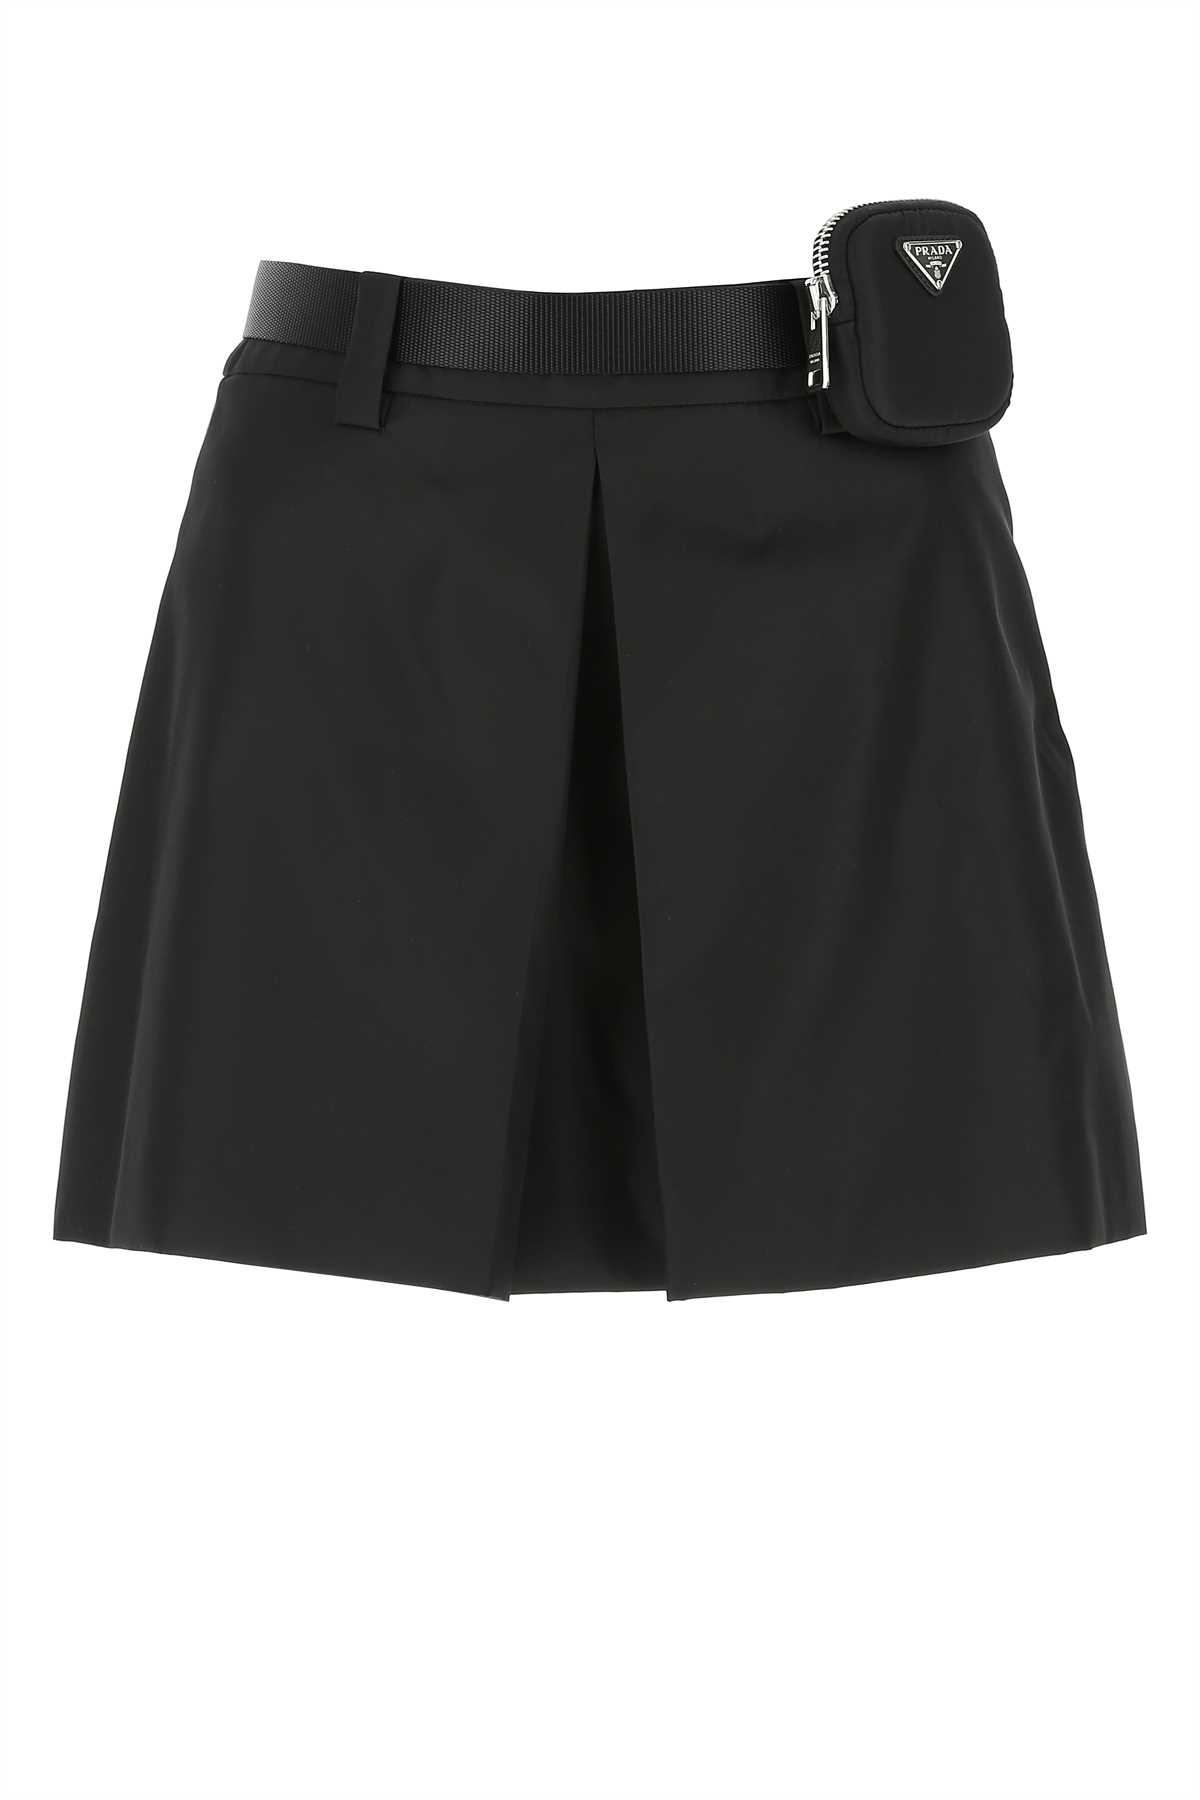 Prada Black Nylon Mini Skirt